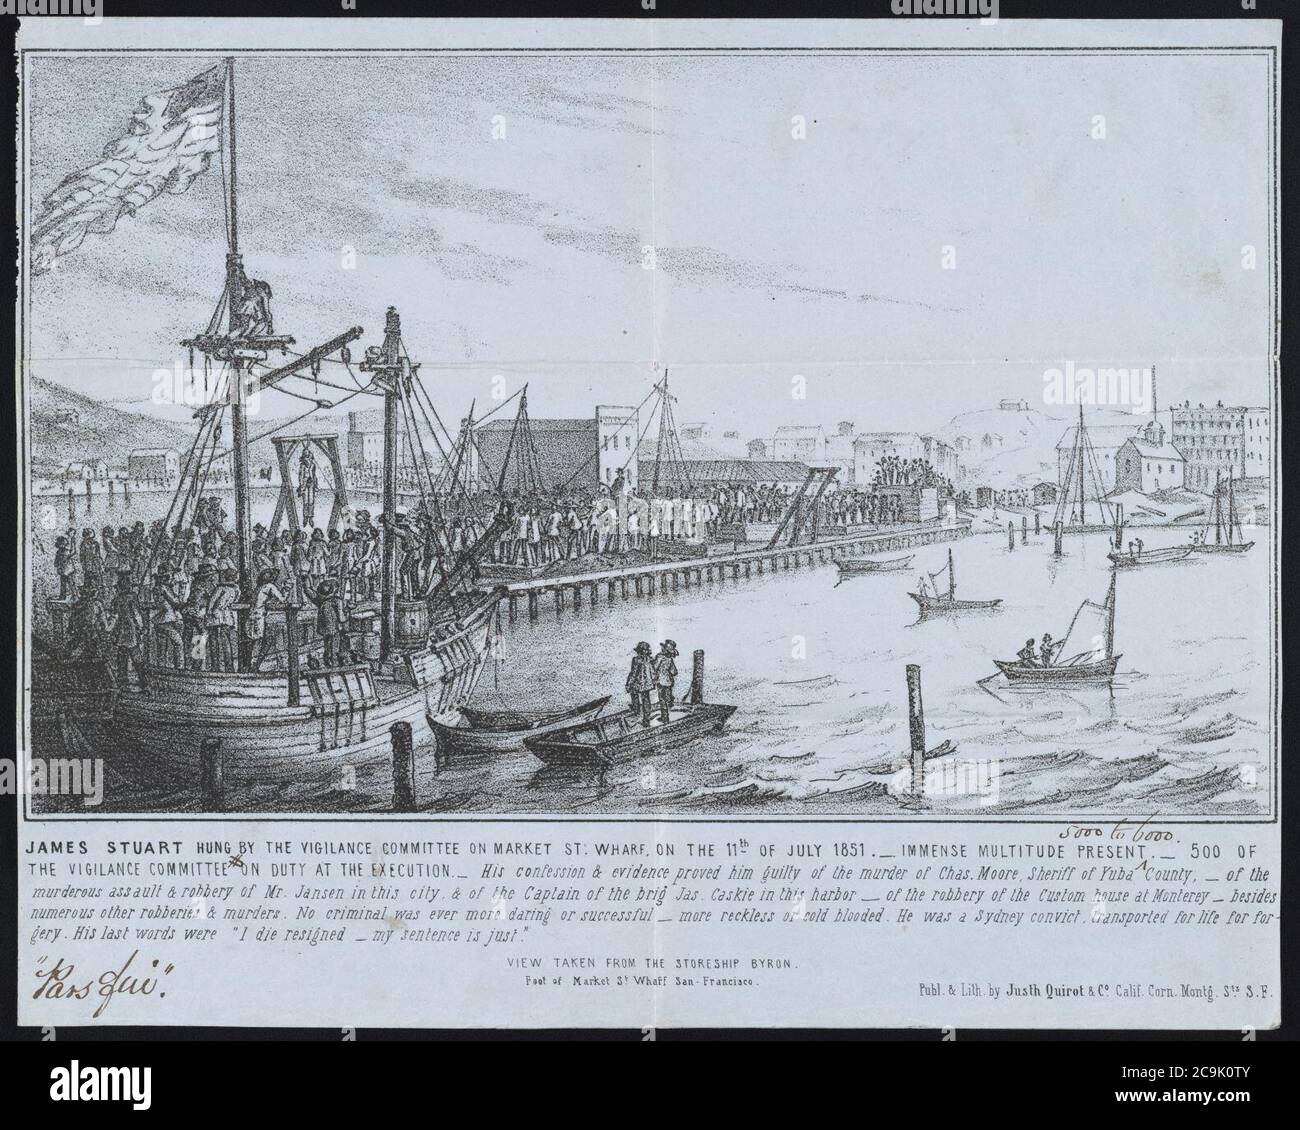 James Stuart hing am 11. Juli 1851 durch das Wachkommitee auf Market St. Wharf ; immense Menge anwesend - 500 des Wachkommitees im Dienst bei der Hinrichtung - - Publ. Und Stockfoto